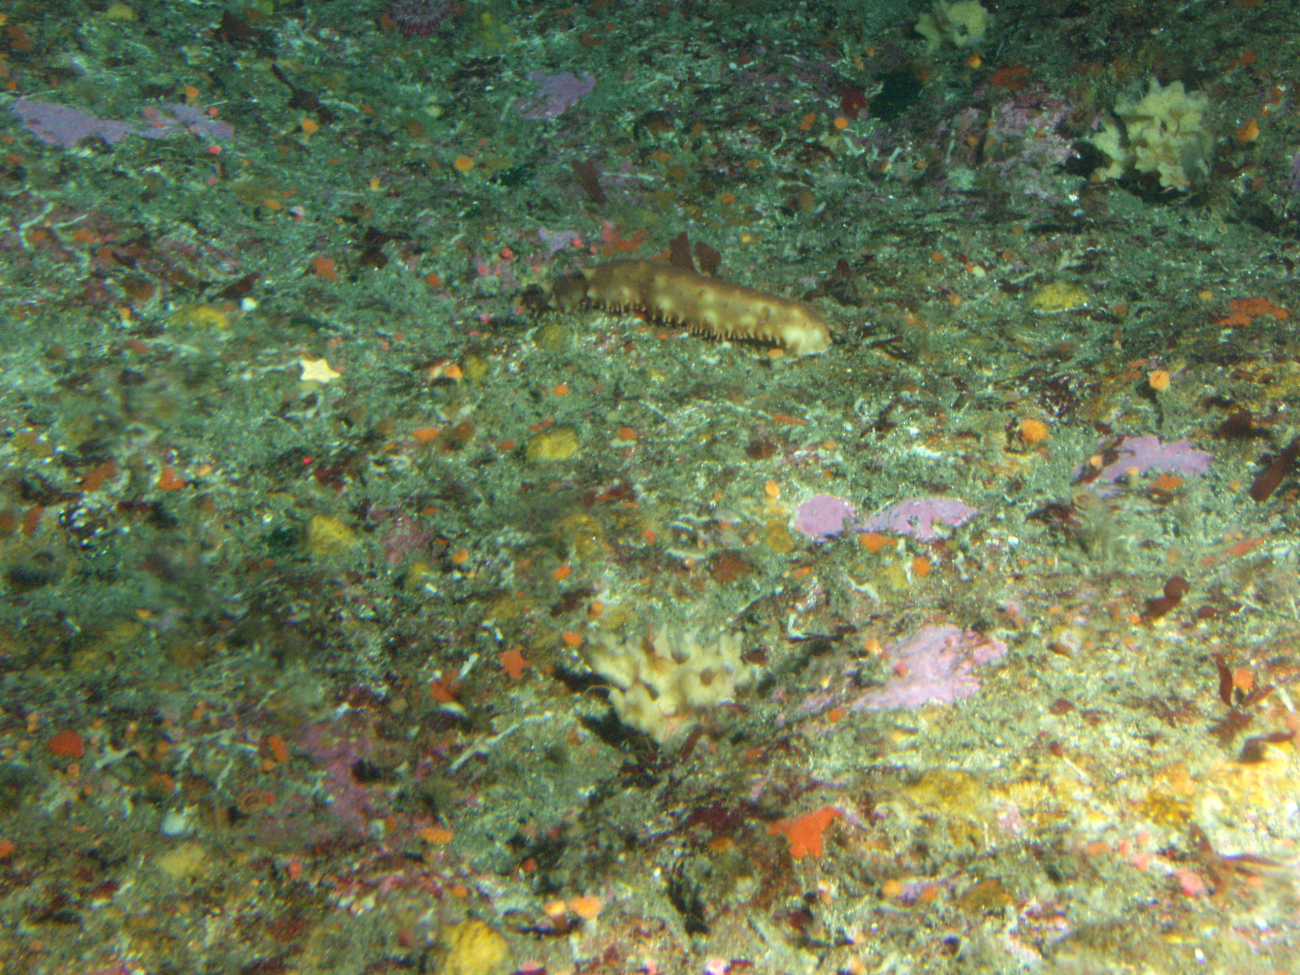 California Sea Cucumber (Parastichopus californicus) and invertebrates inrocky reef habitat at 65 meters depth